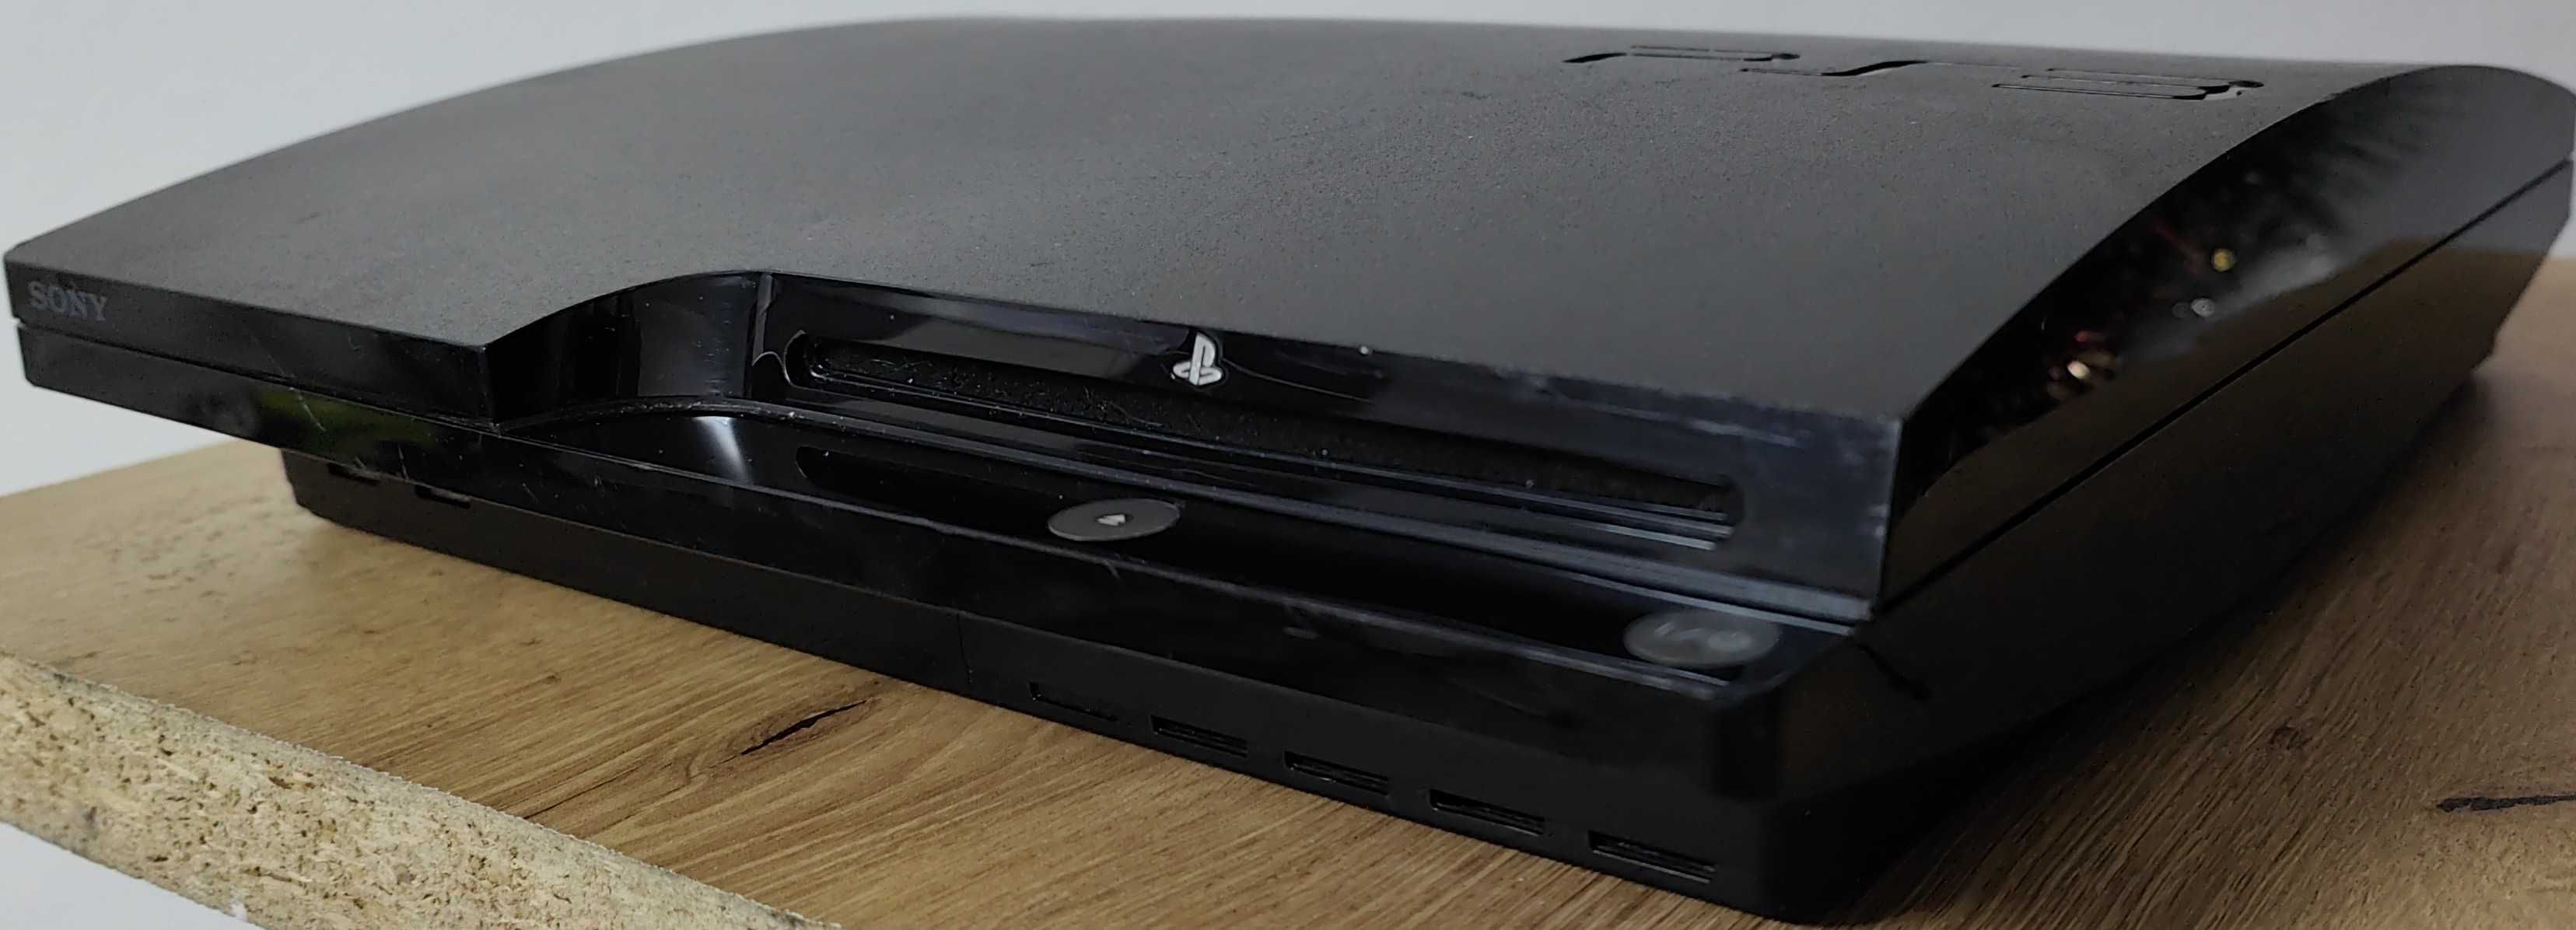 Consola PlayStation Slim 3 modata cu accesorii si 22 jocuri de top